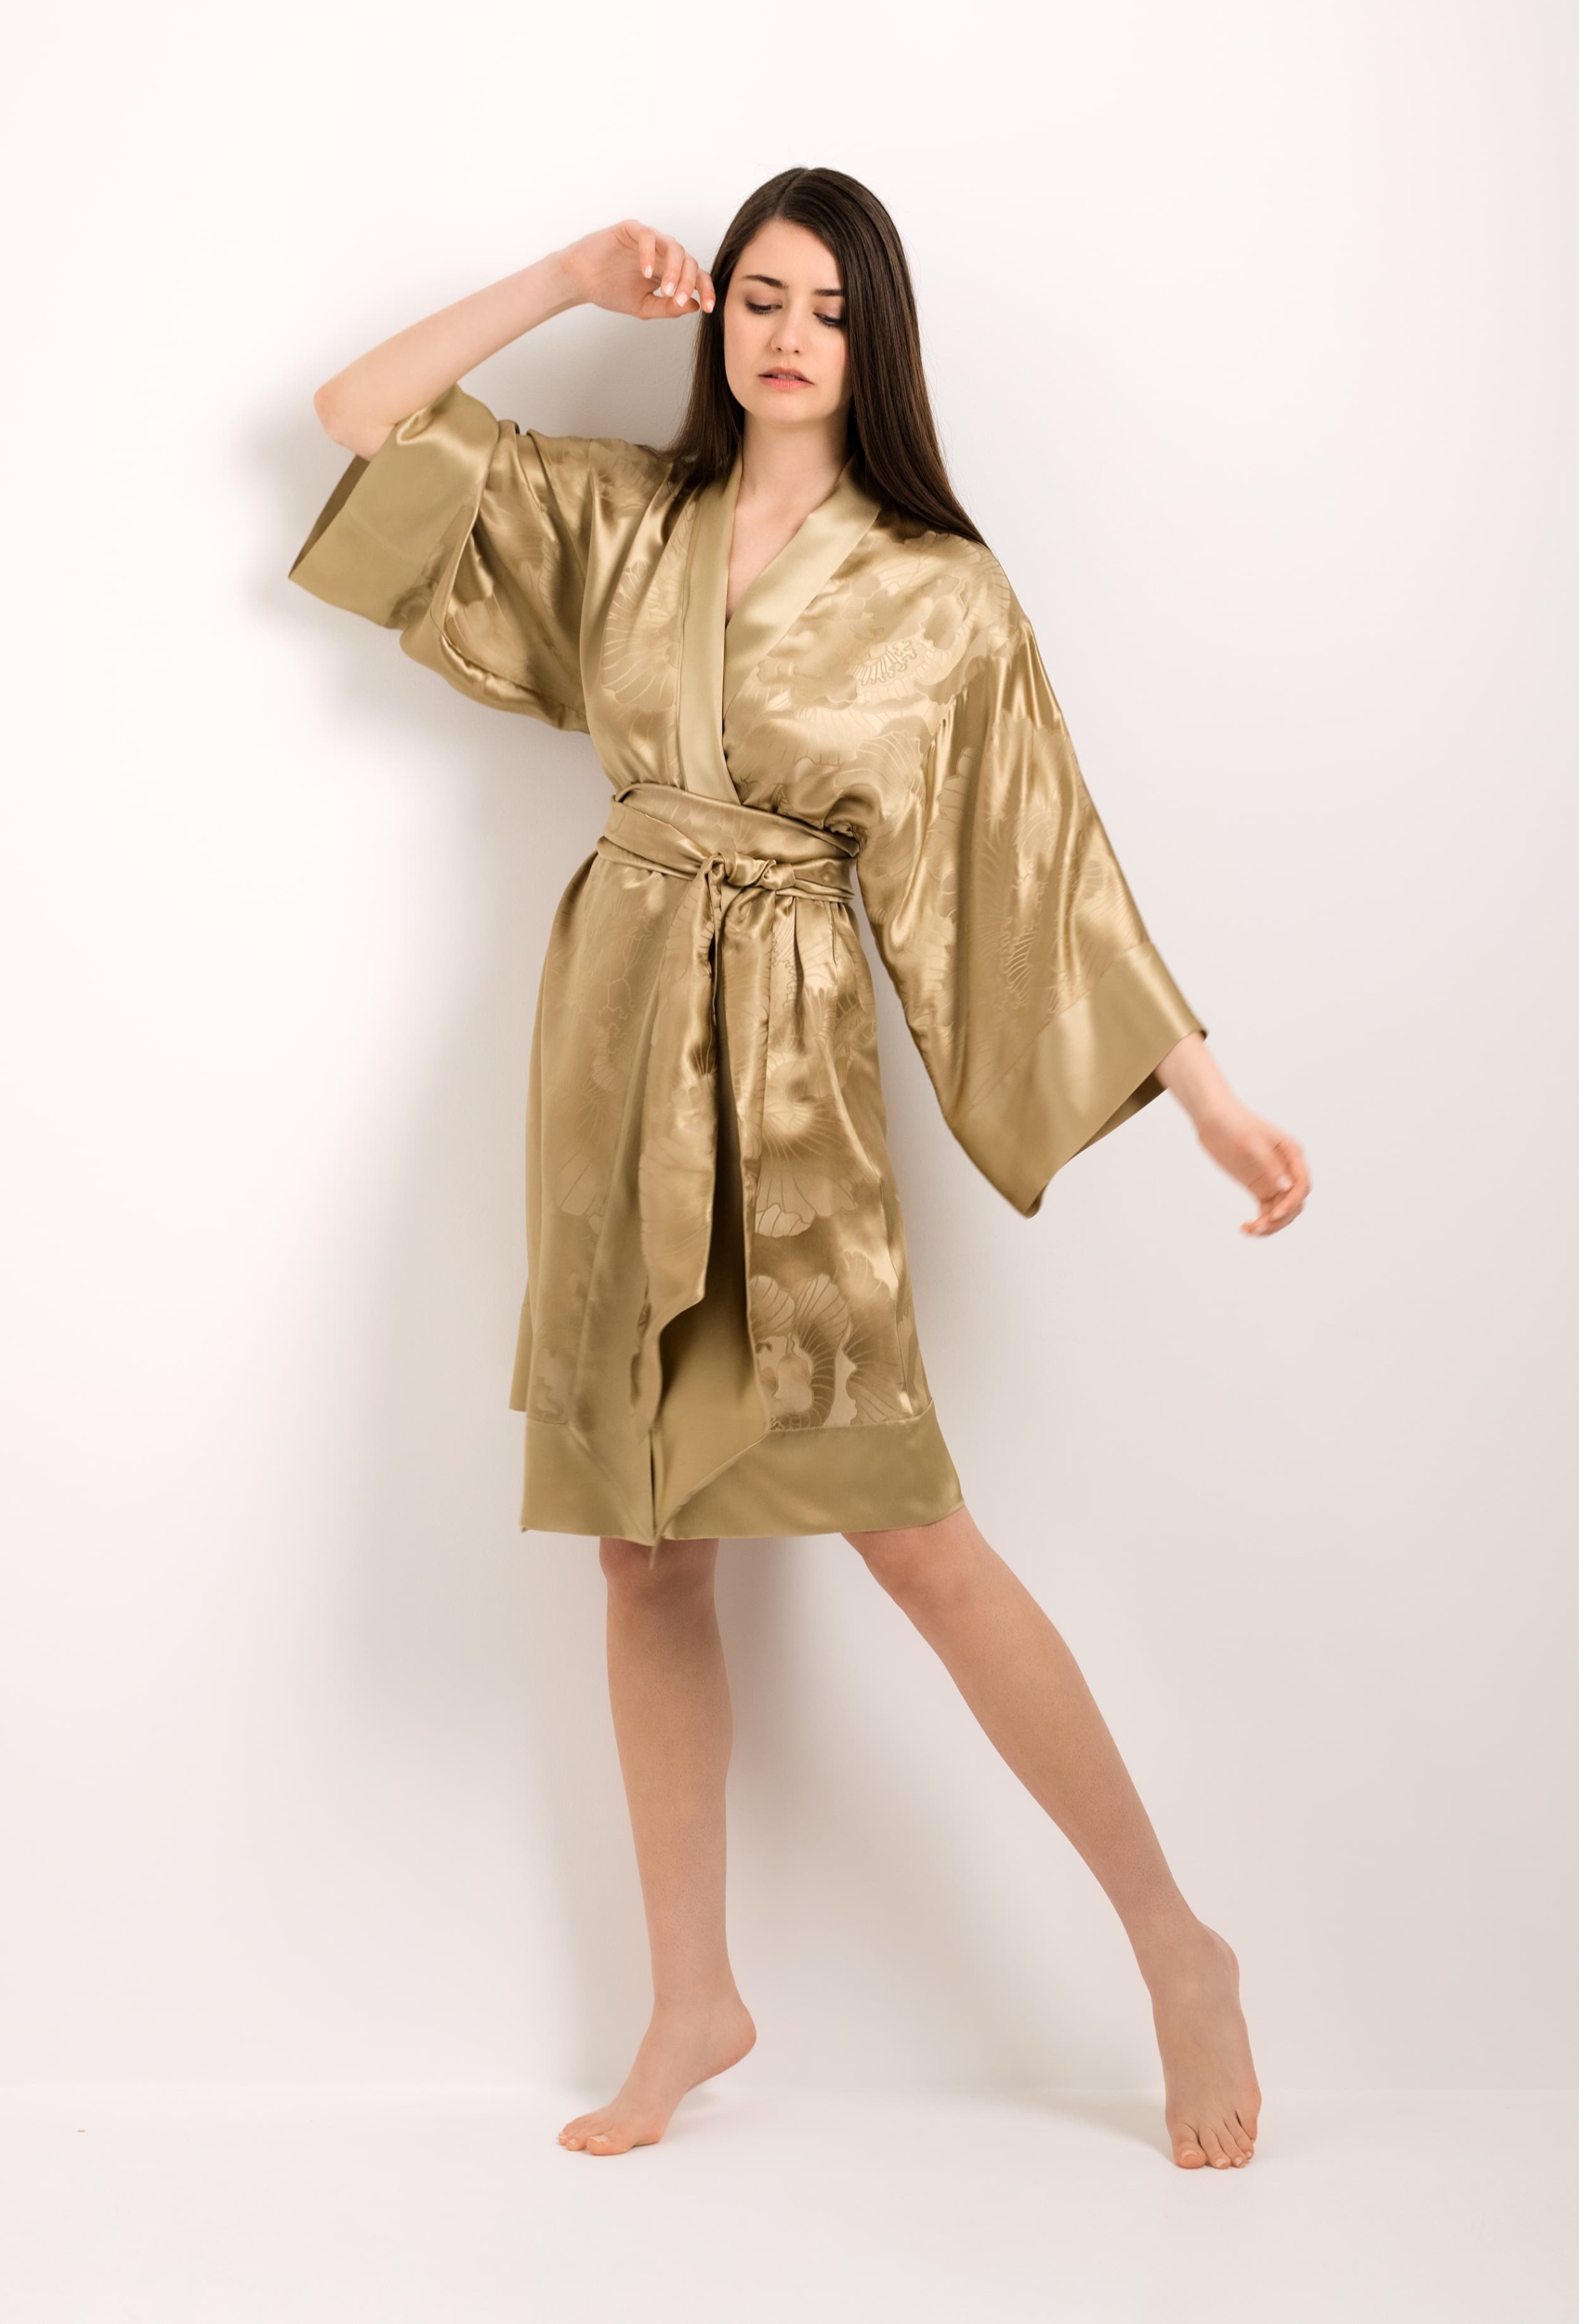 Jacquard silk kimono gold - Gilson peony - Carine